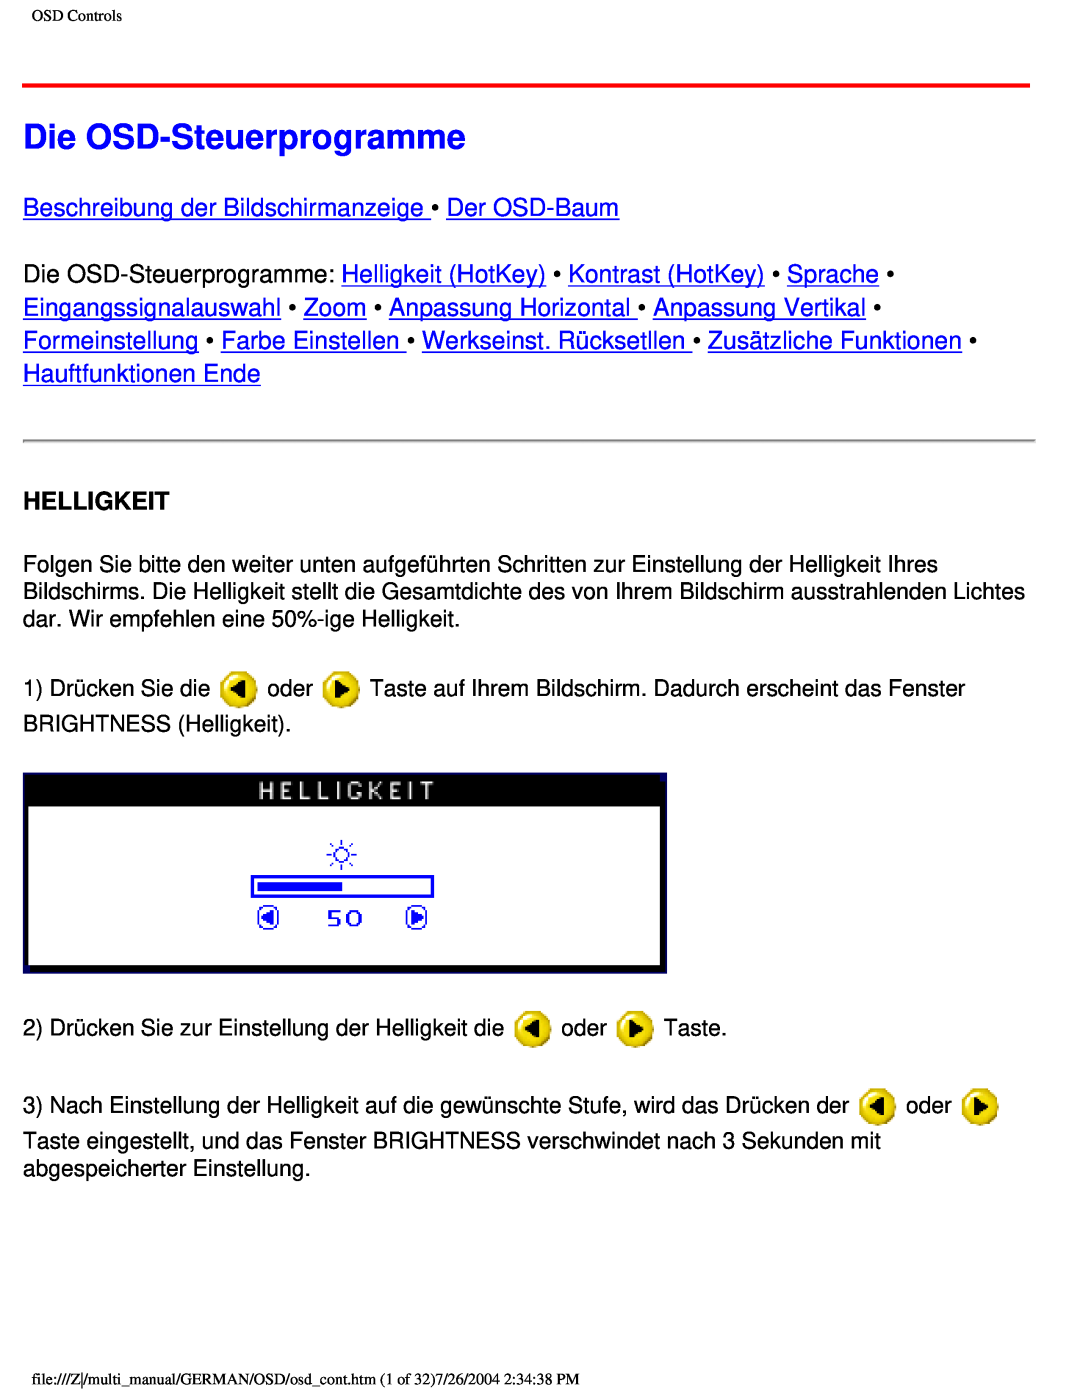 Philips 107X2 user manual Die OSD-Steuerprogramme, Beschreibung der Bildschirmanzeige Der OSD-Baum, Helligkeit 